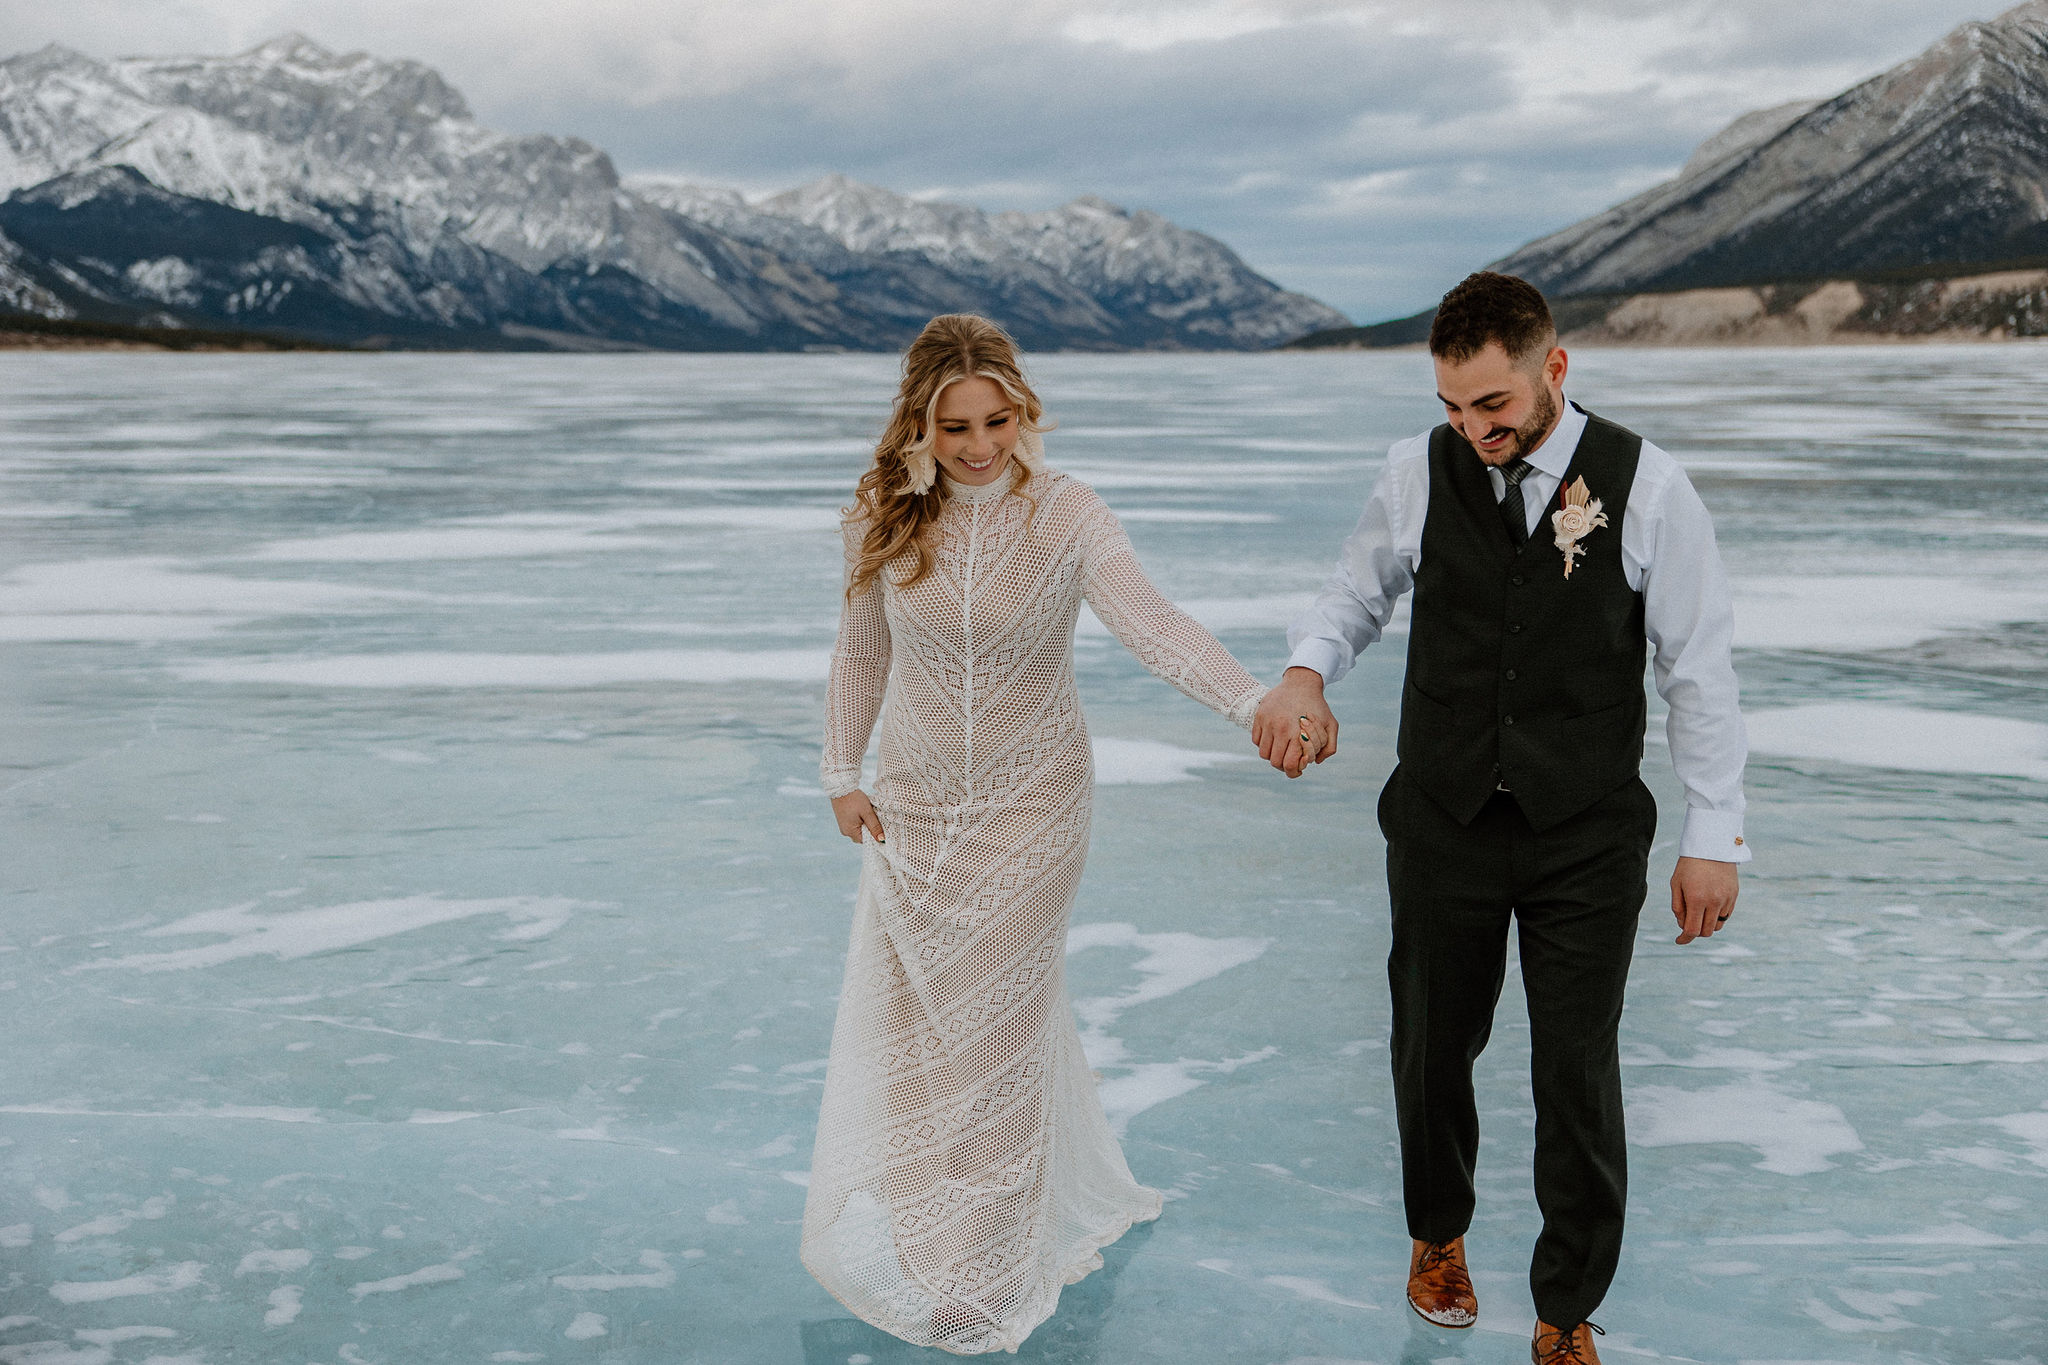 Couple in wedding formal walking on frozen lake